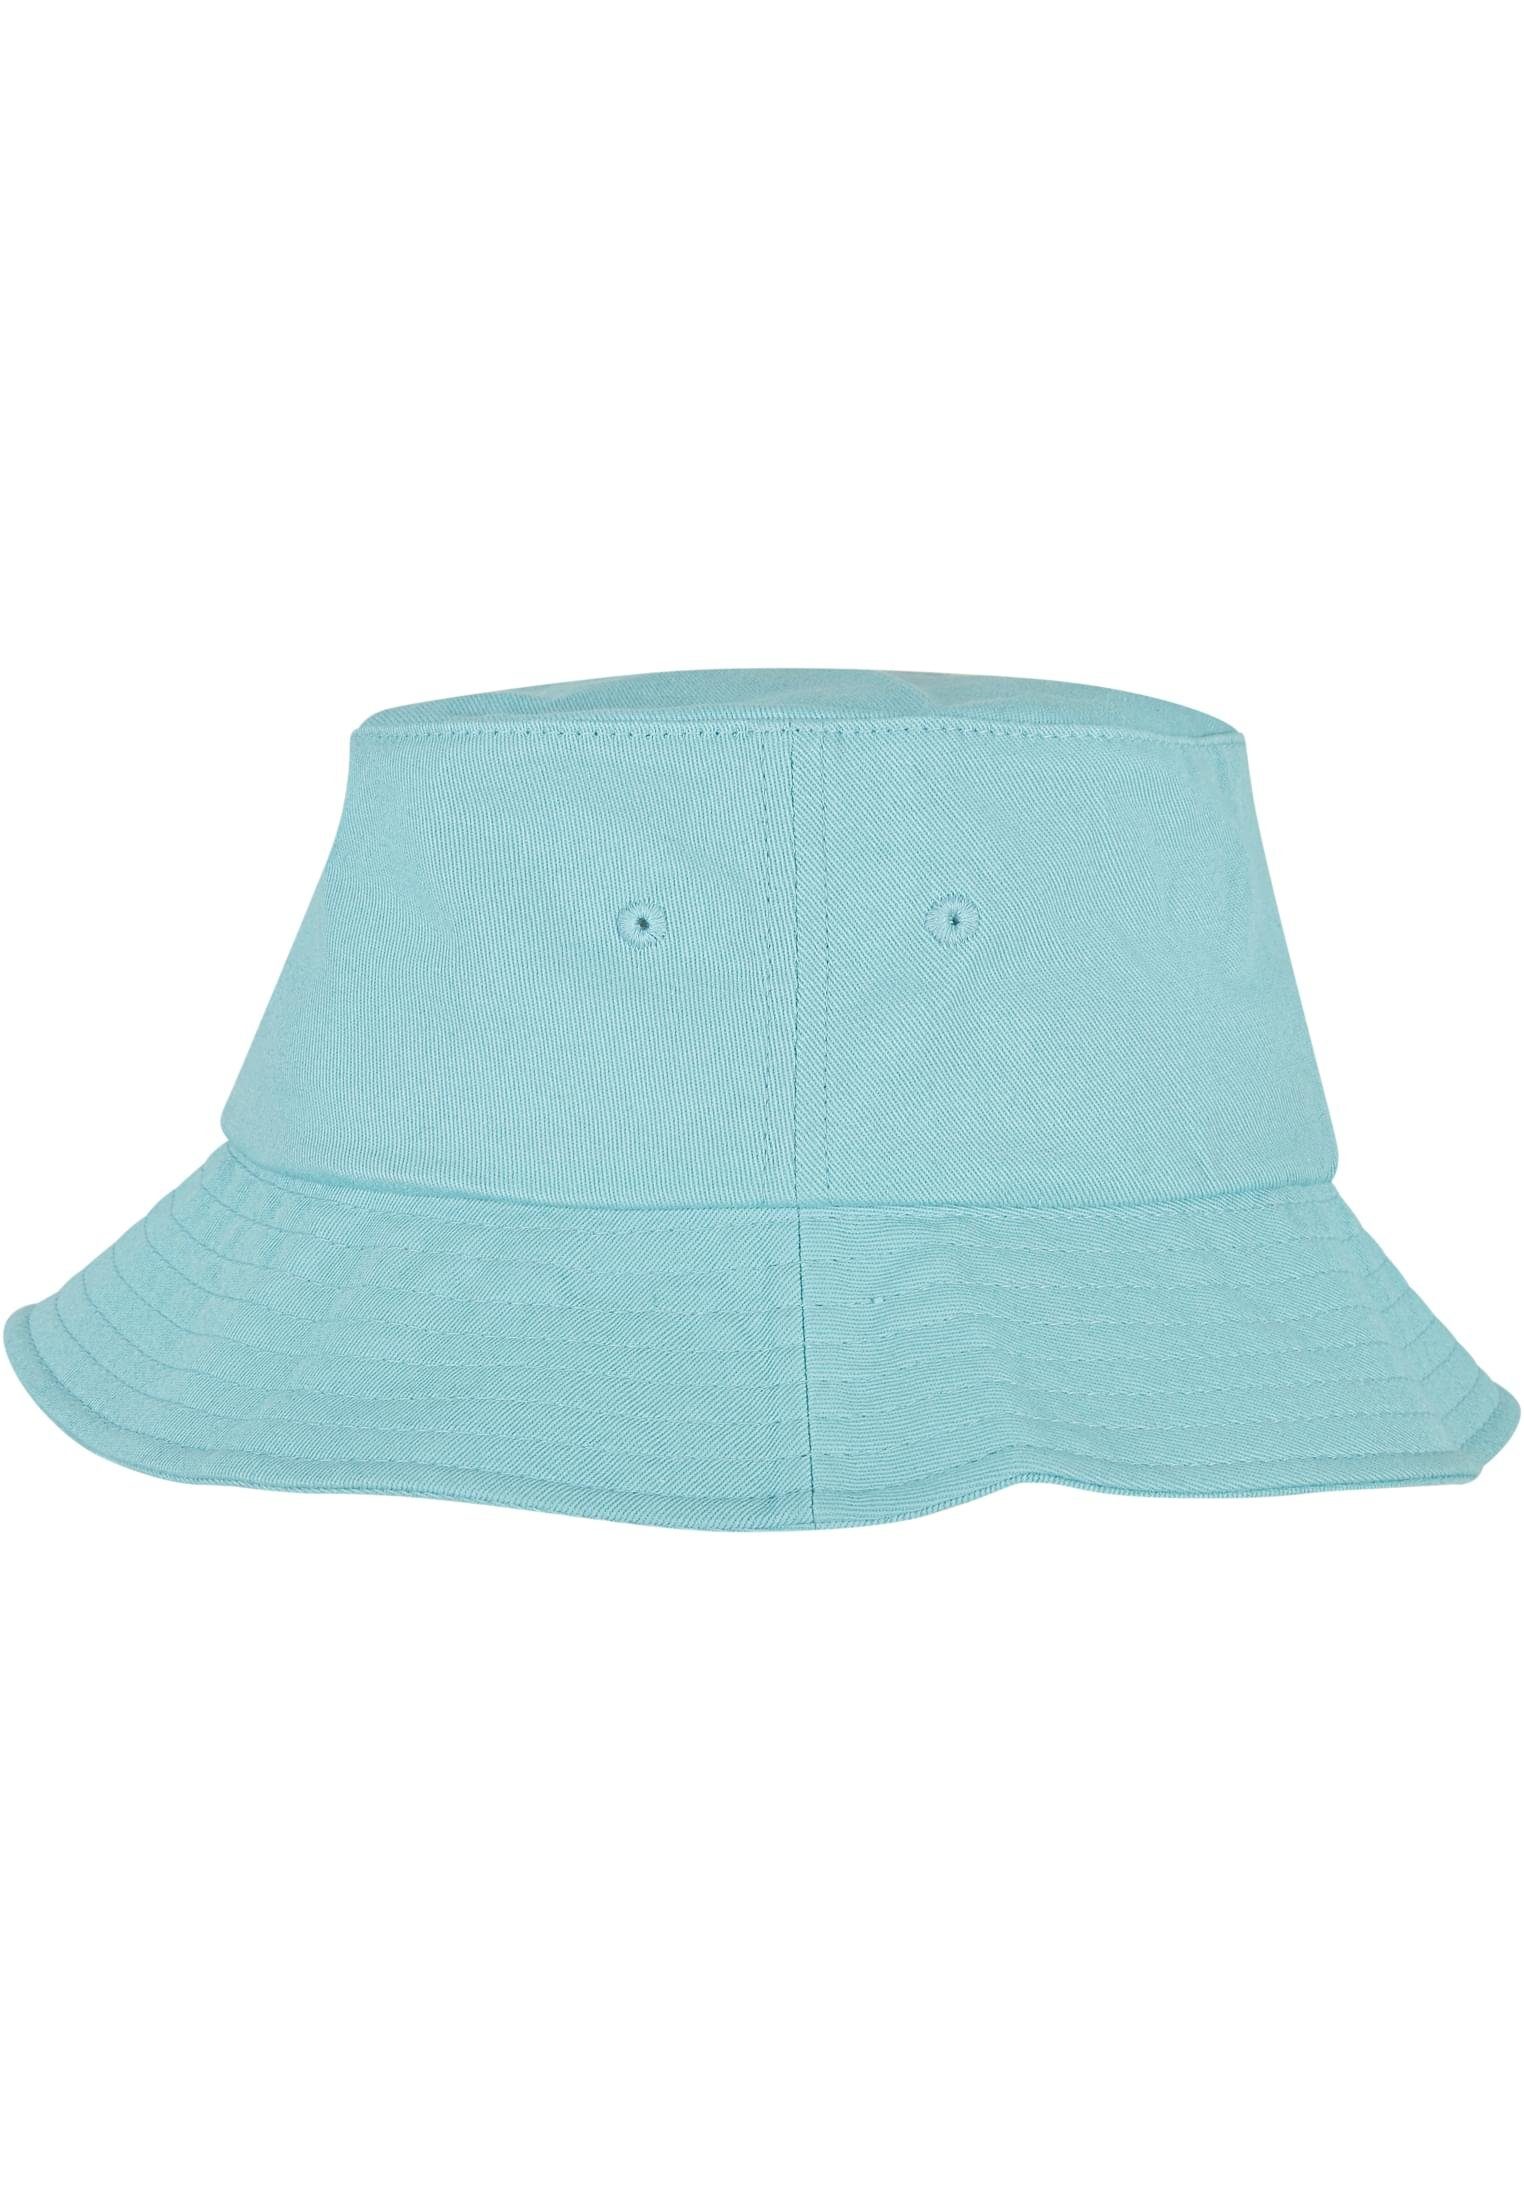 Twill Cotton Flex Accessoires Bucket Hat Flexfit Cap Flexfit airblue